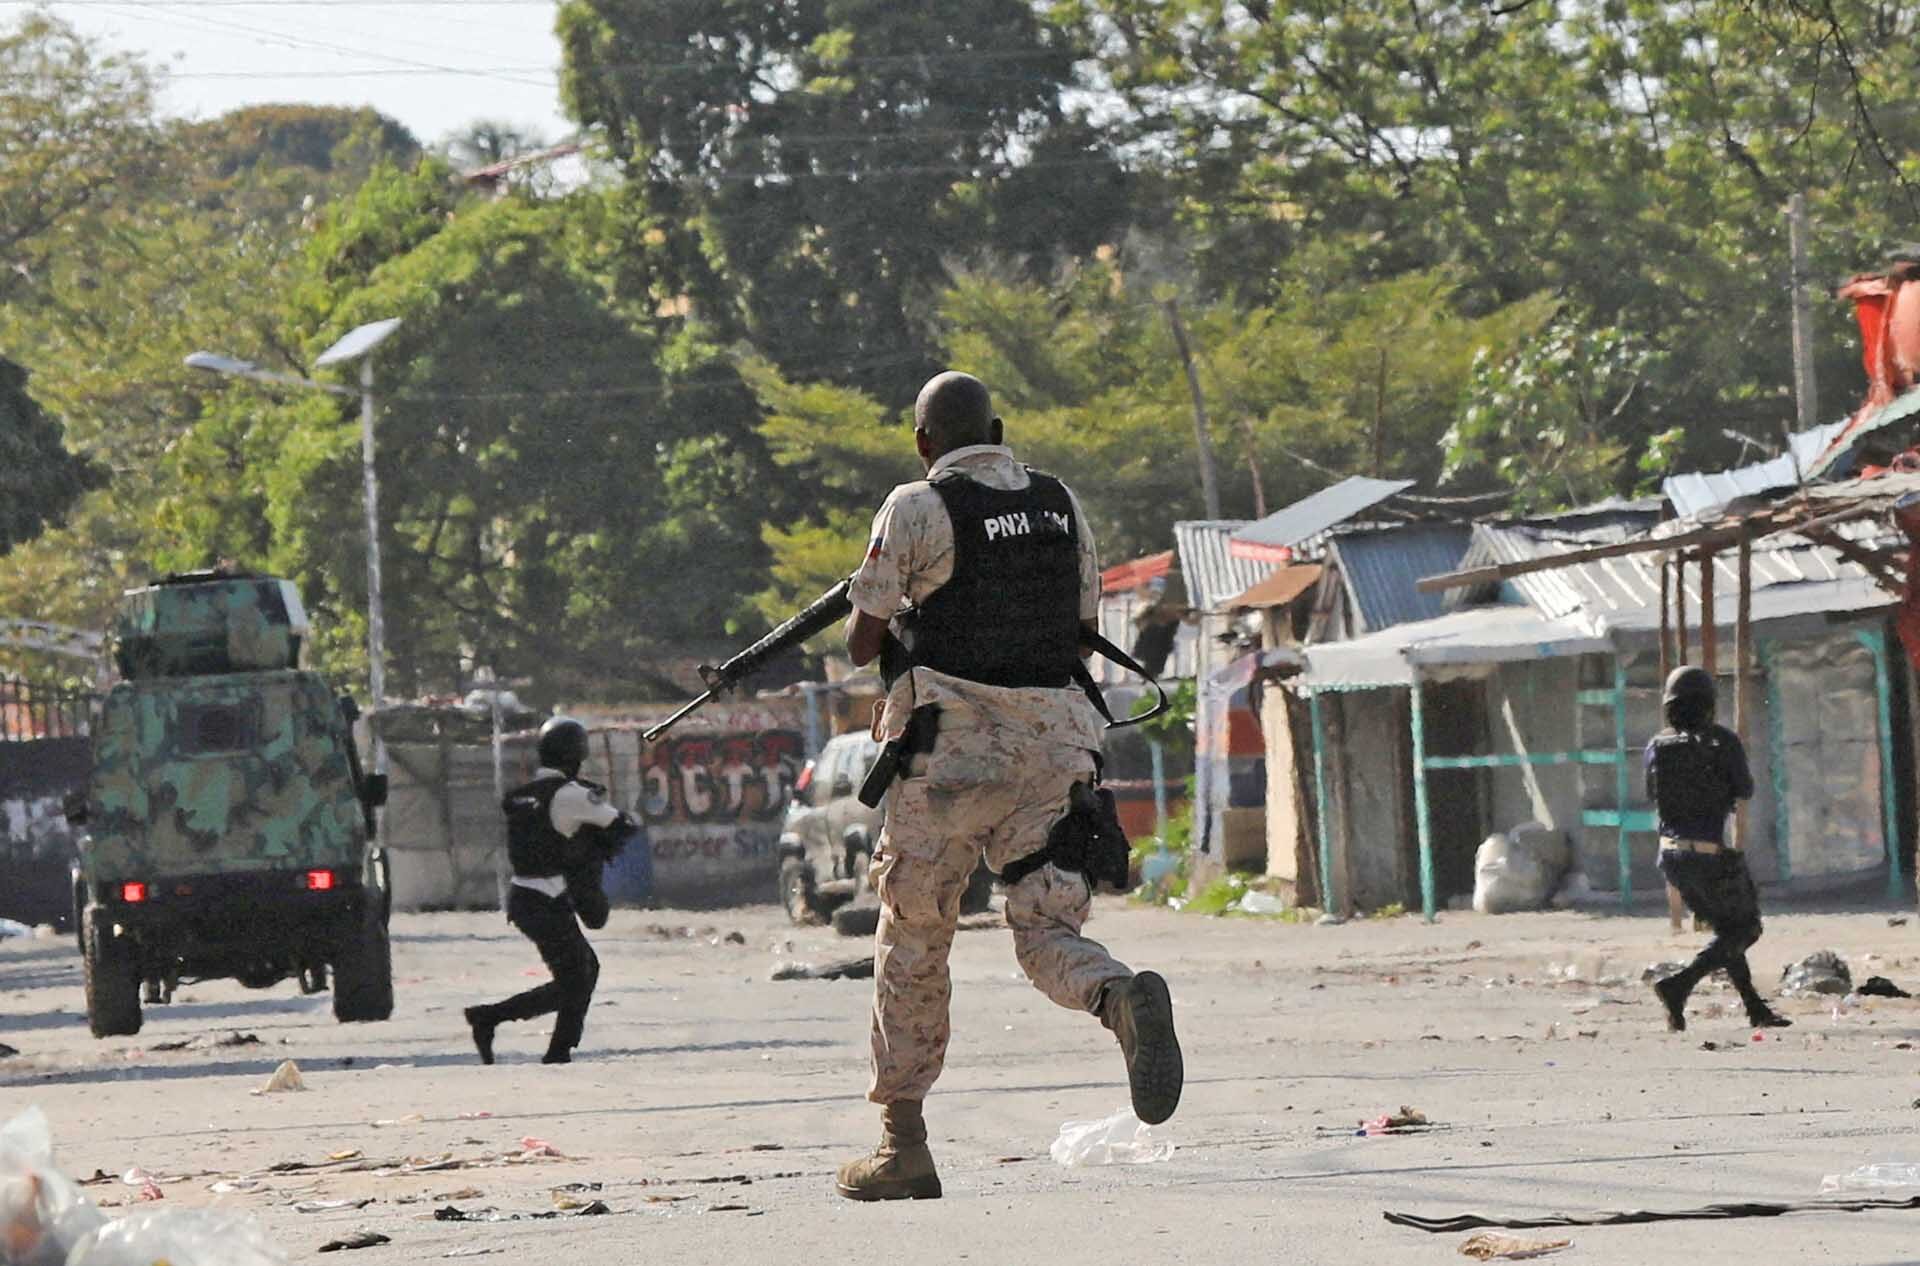 เฮติระส่ำไม่เลิก! แก๊งอาชญากรปล่อย 4 พันคนพ้นคุก-มีแก๊งลอบฆ่าอดีตปธน.ด้วย